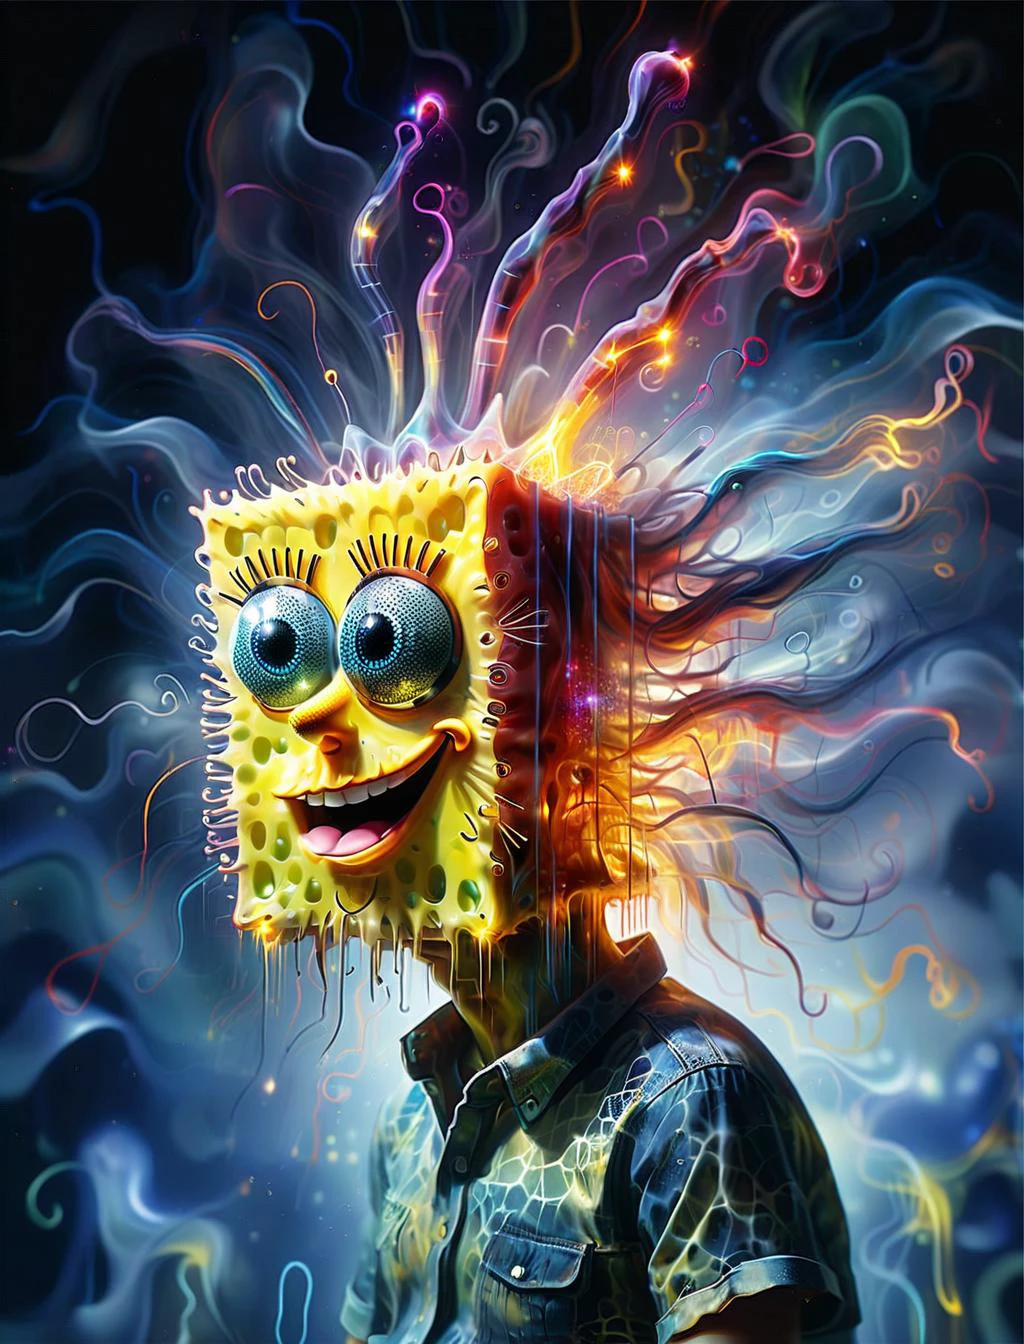 DVR-wwyt การสัมผัสสองครั้ง, ภาพวาดสีน้ำมันสมัยใหม่ของ (Spongebob Squarepants:1.2), คิดถึงไฟฟ้าแฟร็กทัลเคอร์เลียนเรืองแสงนีออน